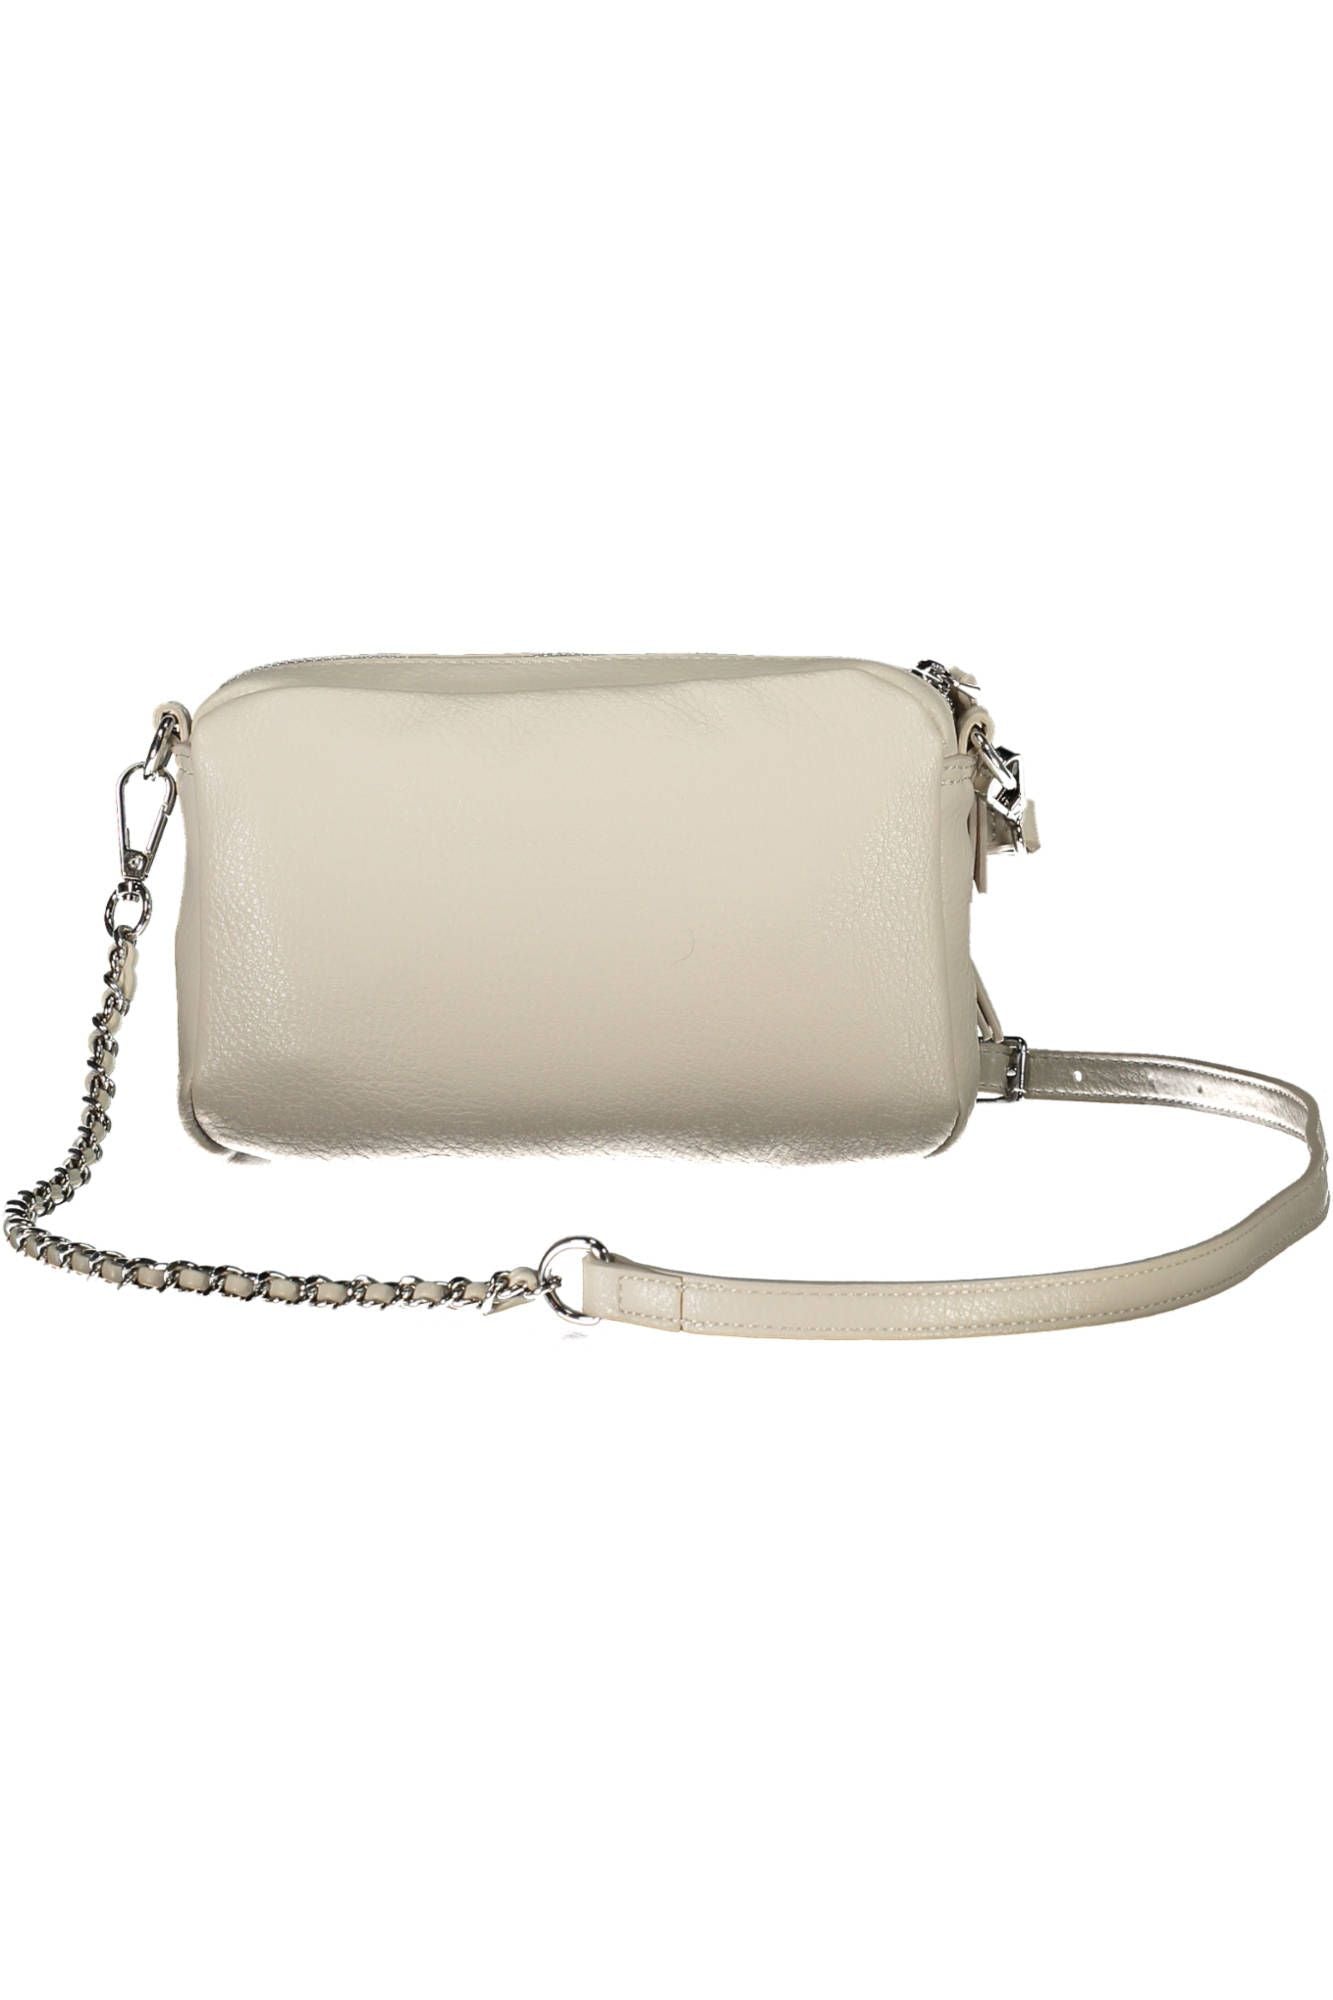 Desigual White Polyurethane Handbag - Walbiz.com